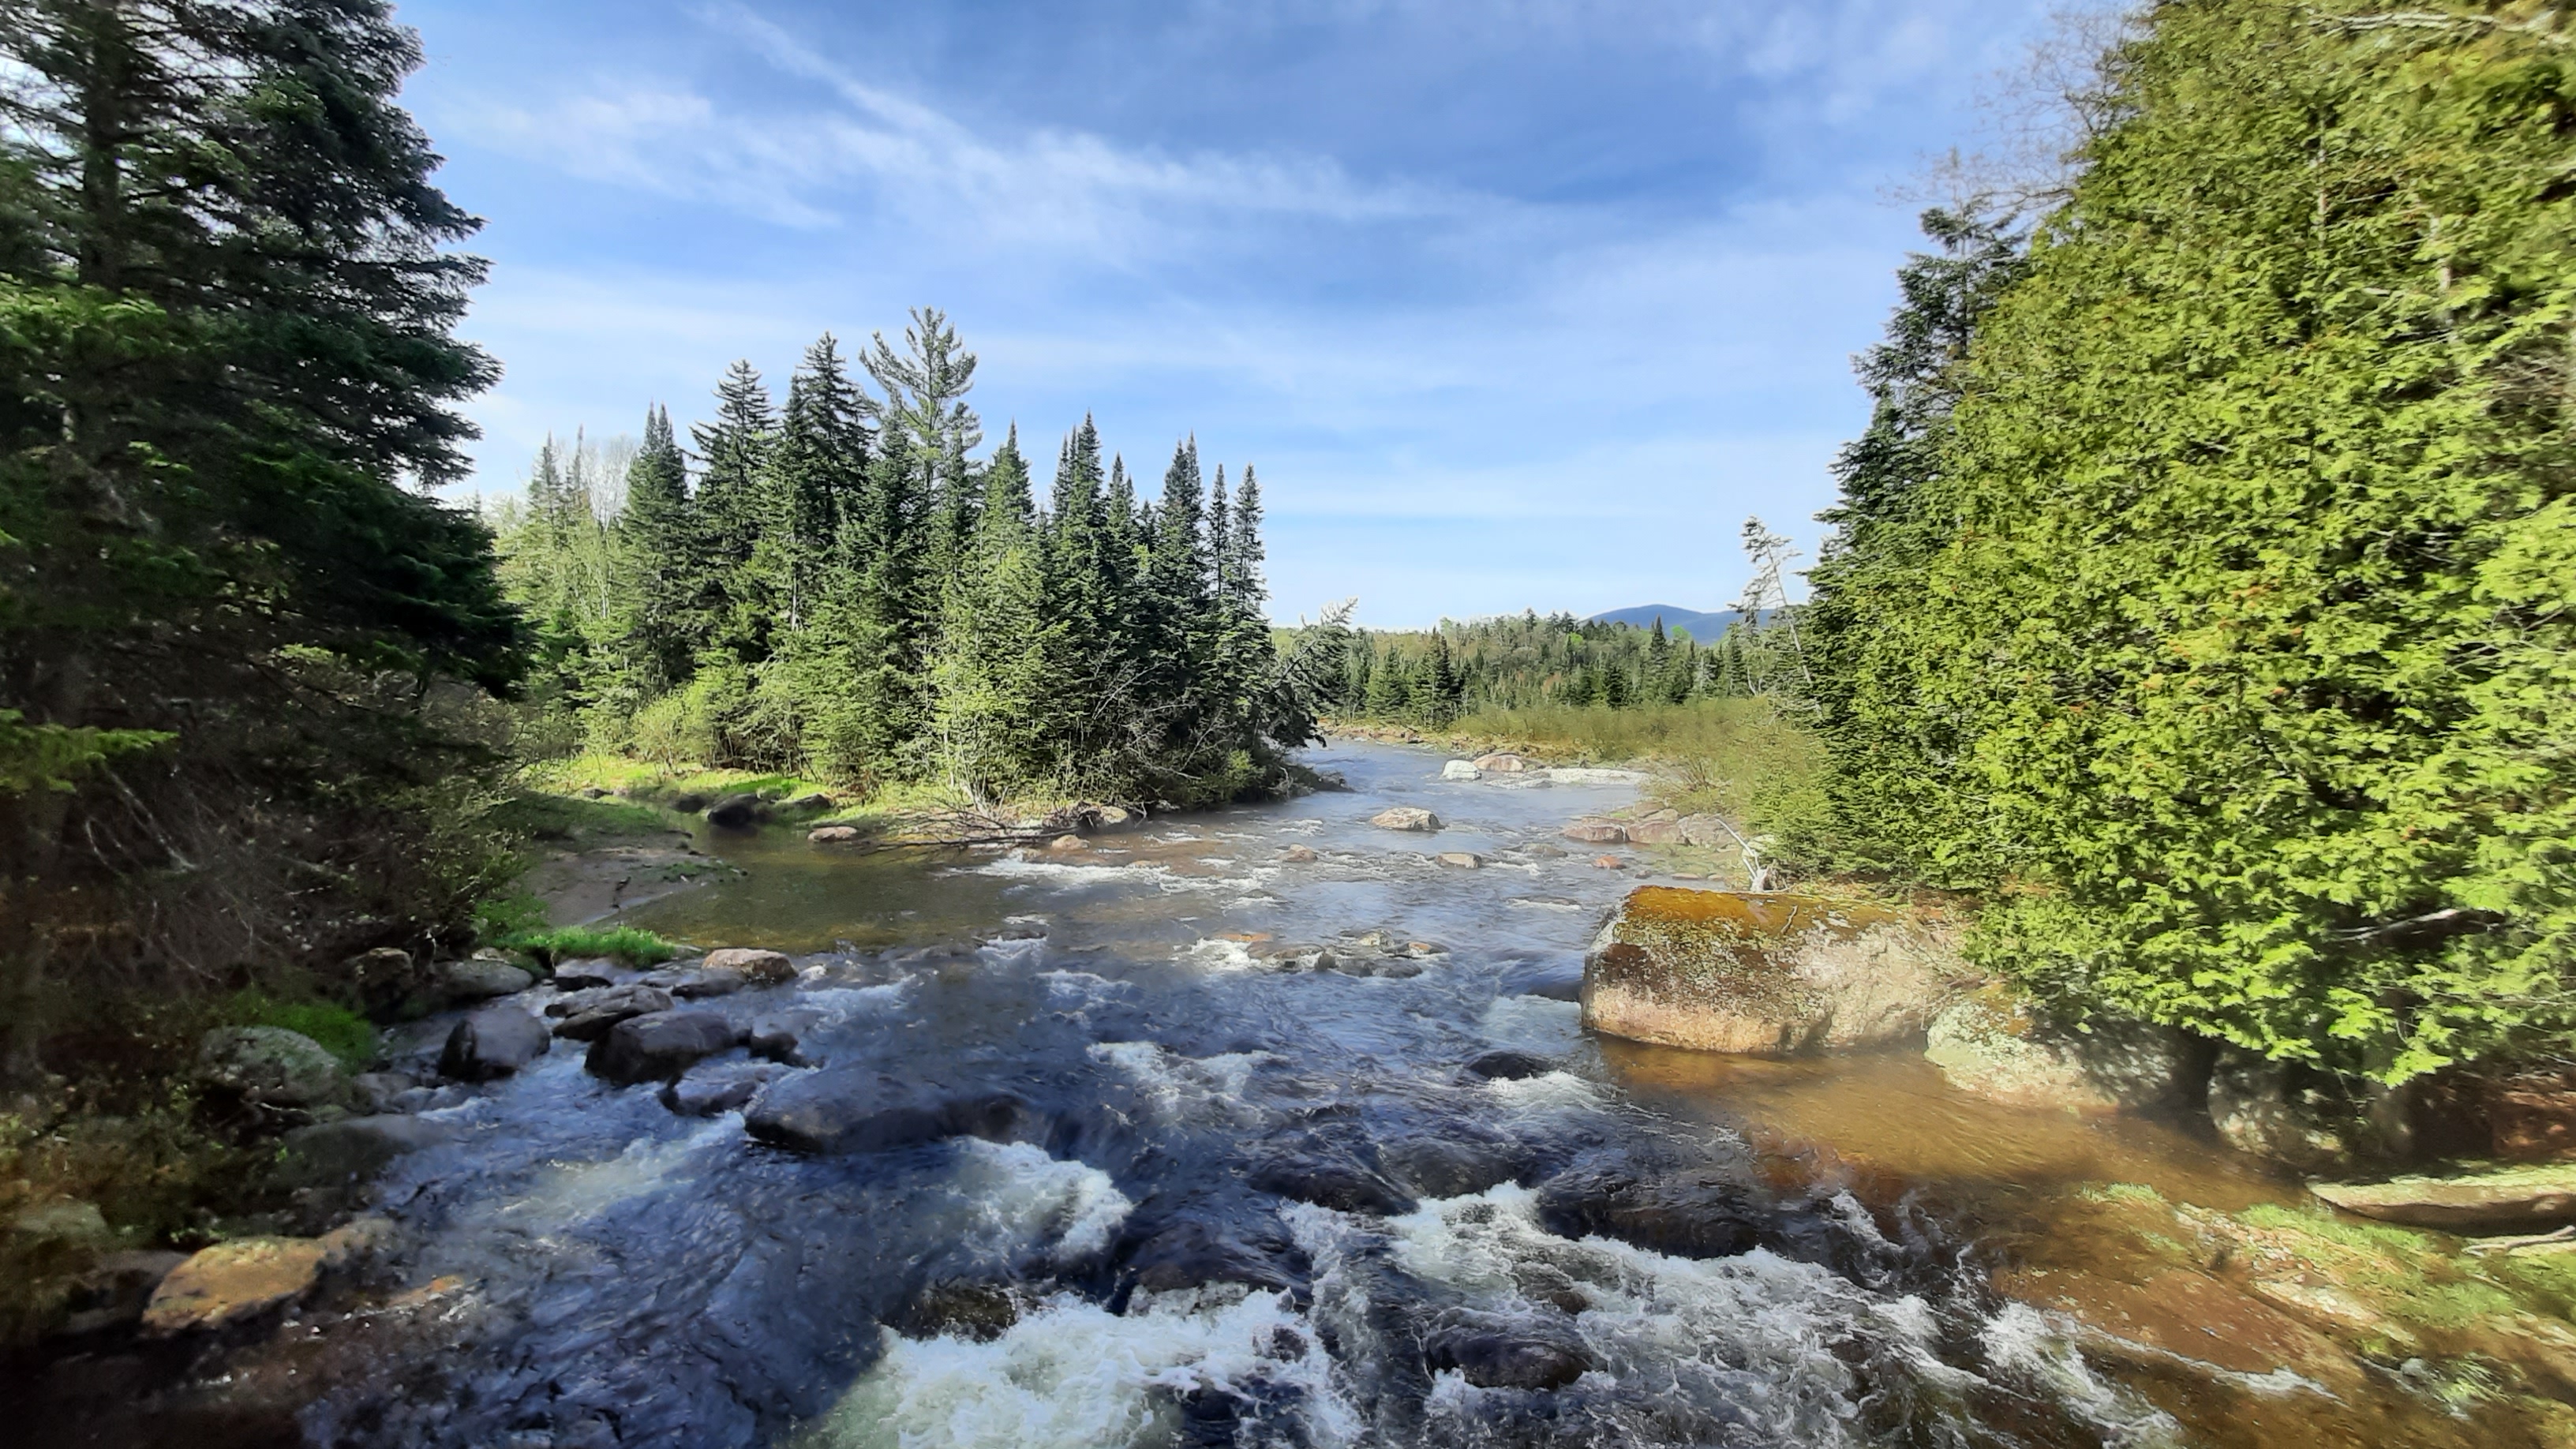 A remote Adirondack river